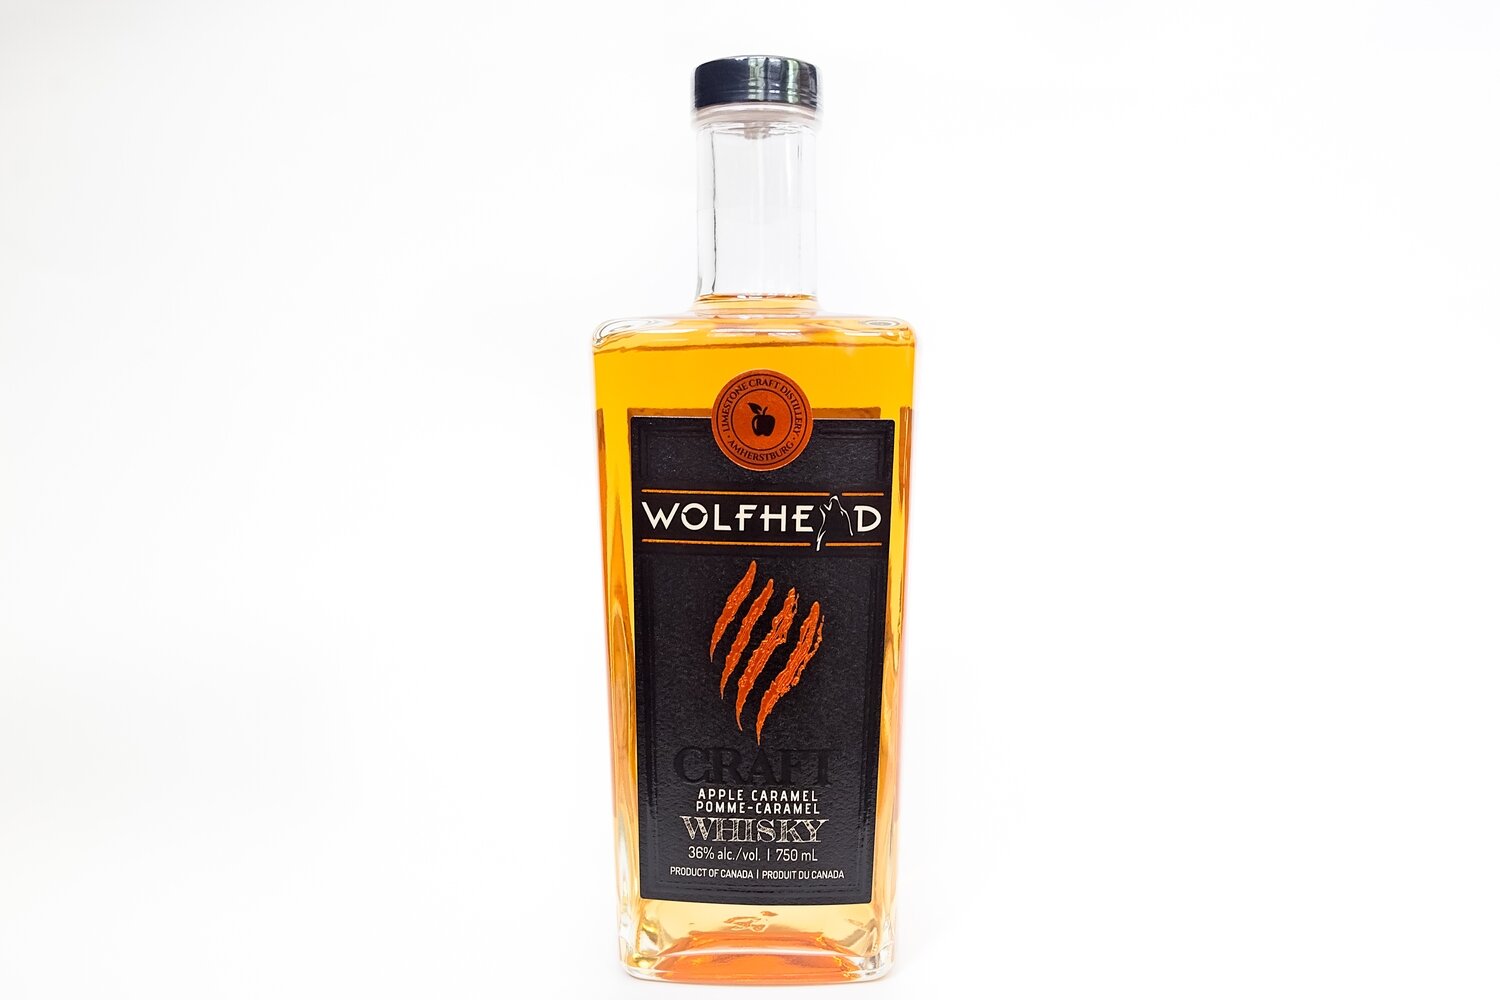 Wolfhead - Apple Caramel Whisky 750ml